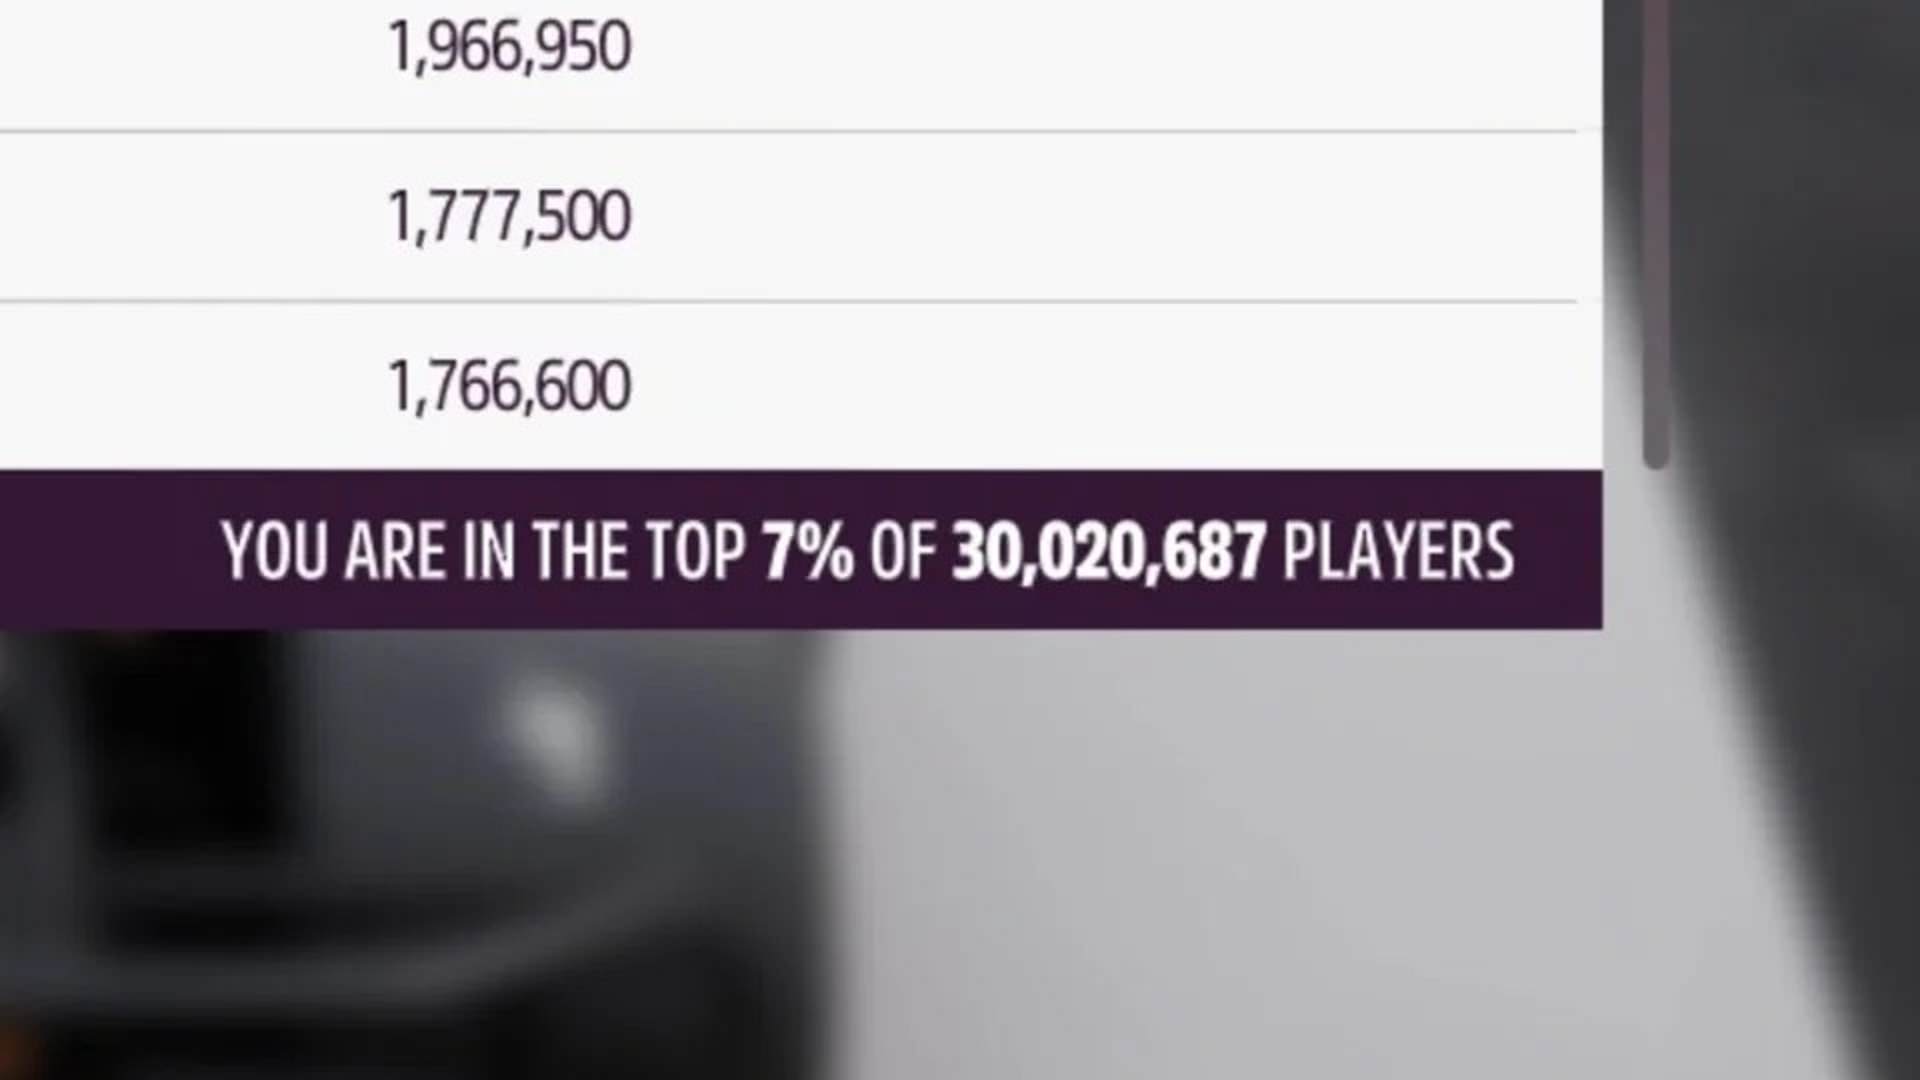 بر اساس رتبه بندی تالار مشاهیر بازی، Forza Horizon 5 بیش از 30 میلیون بازیکن جذب کرده است.